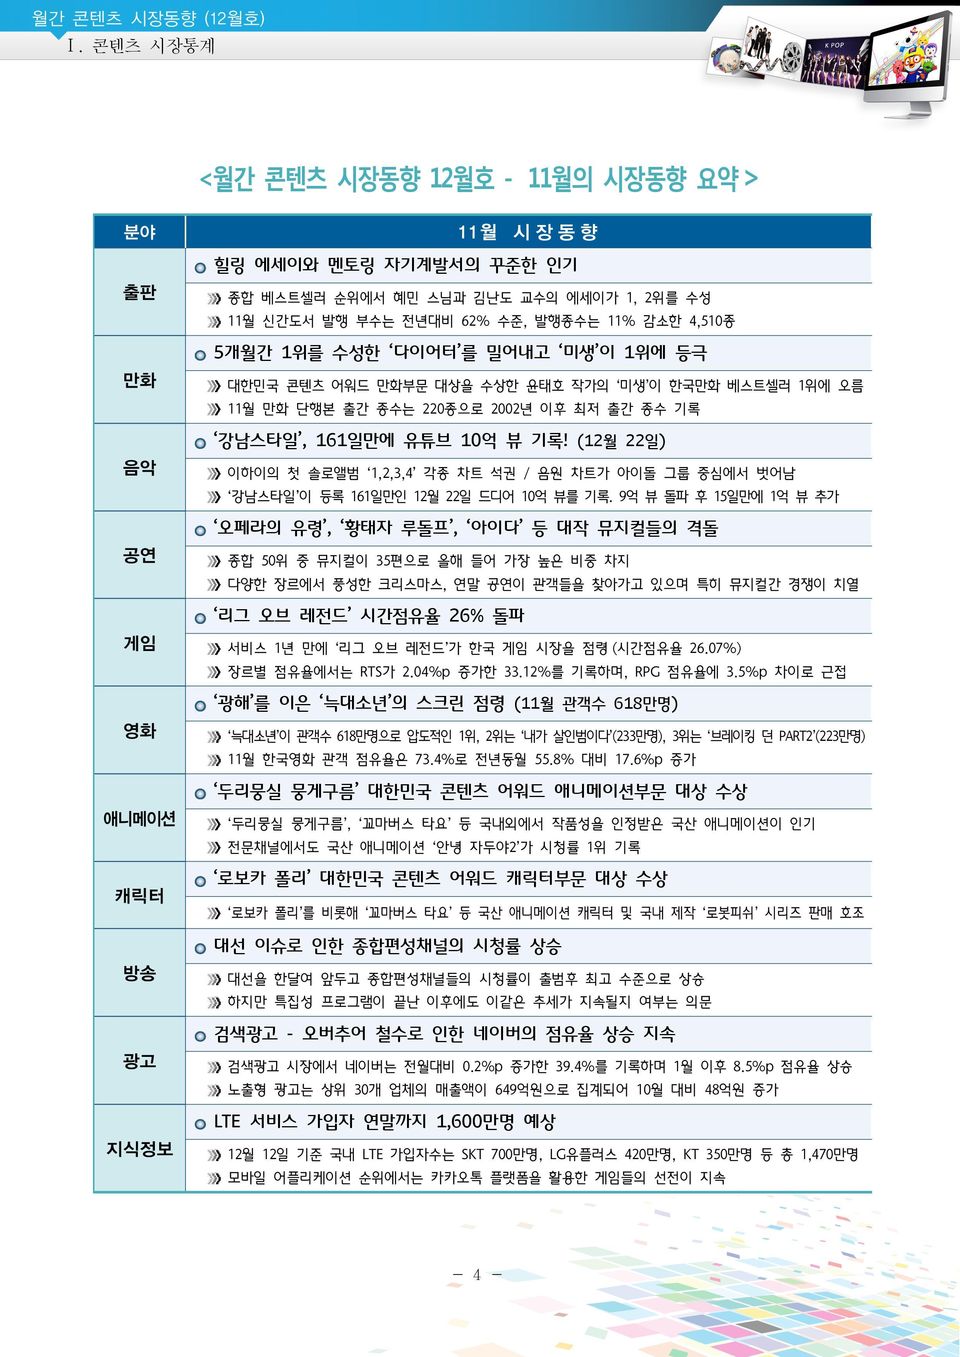 (12월 22일) 이하이의 첫 솔로앨범 1,2,3,4 각종 차트 석권 / 음원 차트가 아이돌 그룹 중심에서 벗어남 강남스타일 이 등록 161일만인 12월 22일 드디어 억 뷰를 기록.